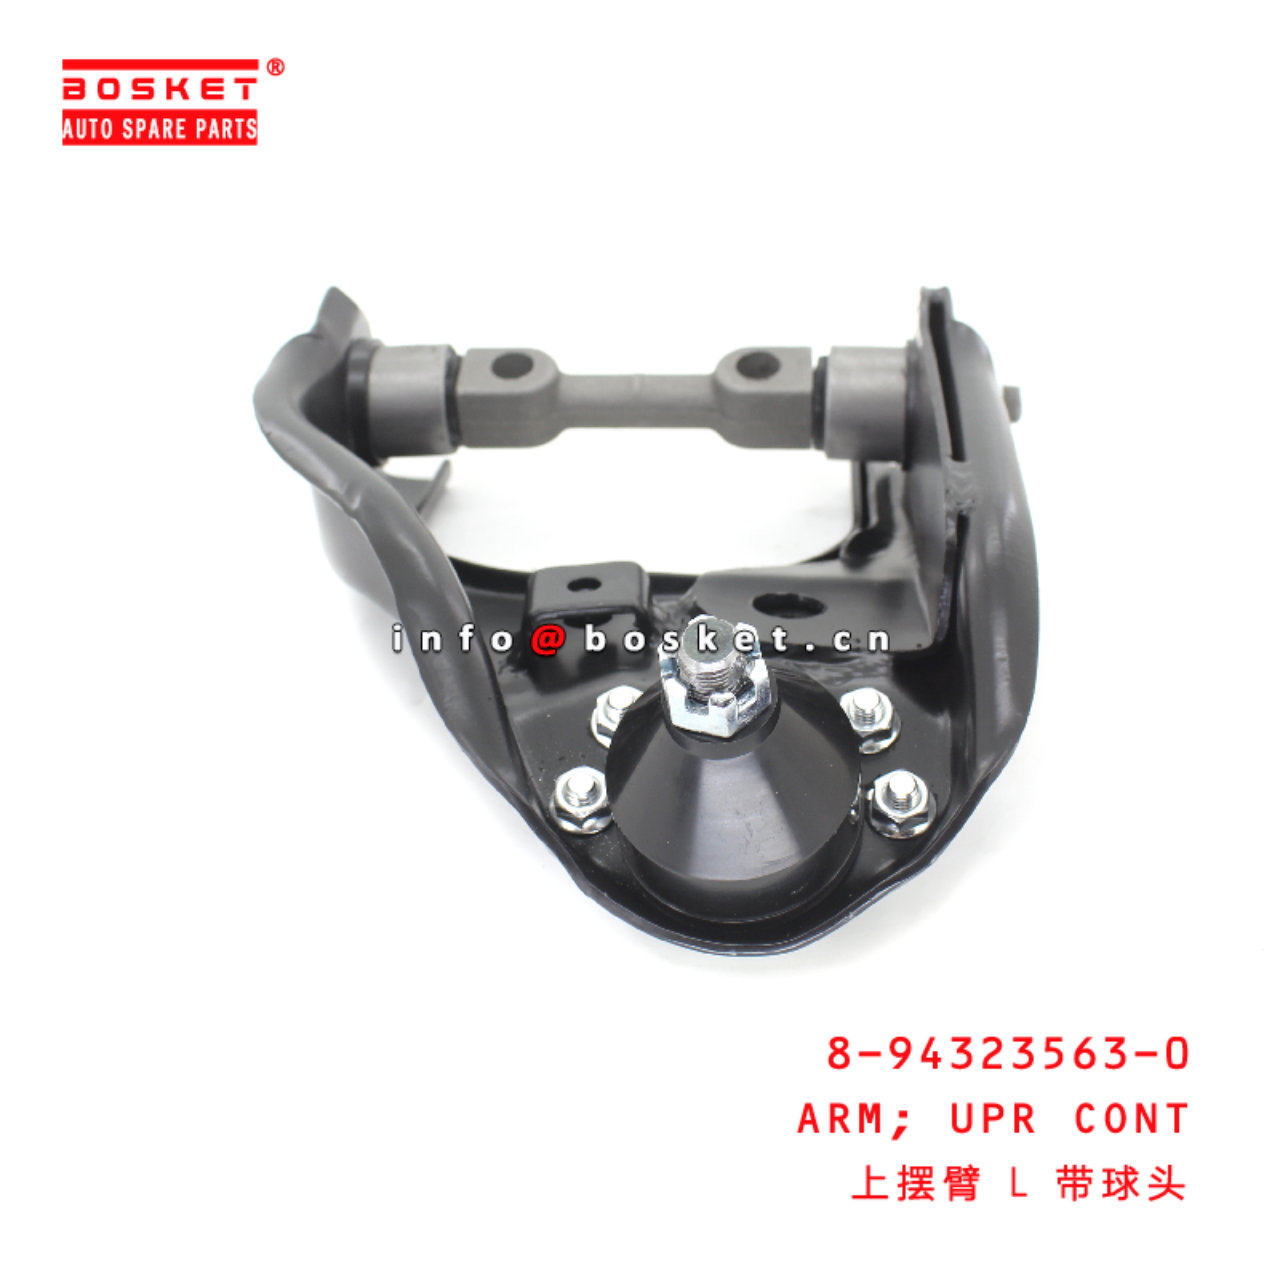 8-94323563-0 Upper Control Arm suitable for ISUZU D-MAX 8943235630